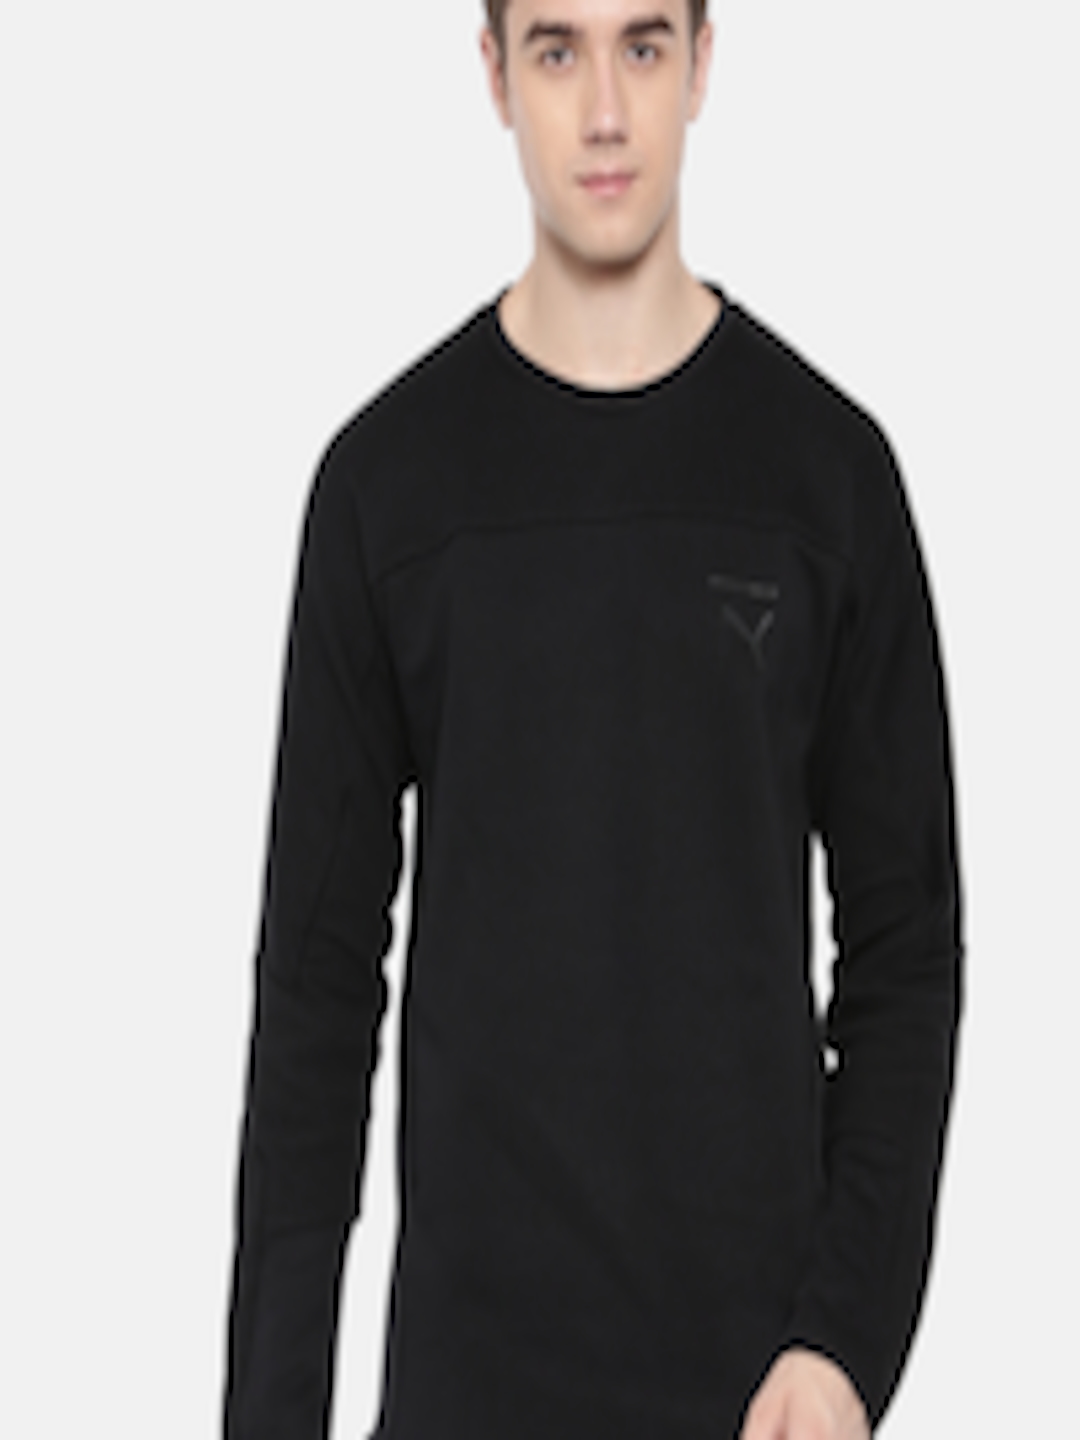 Buy Puma Men Black Solid Pace Crew Sweatshirt - Sweatshirts for Men ...